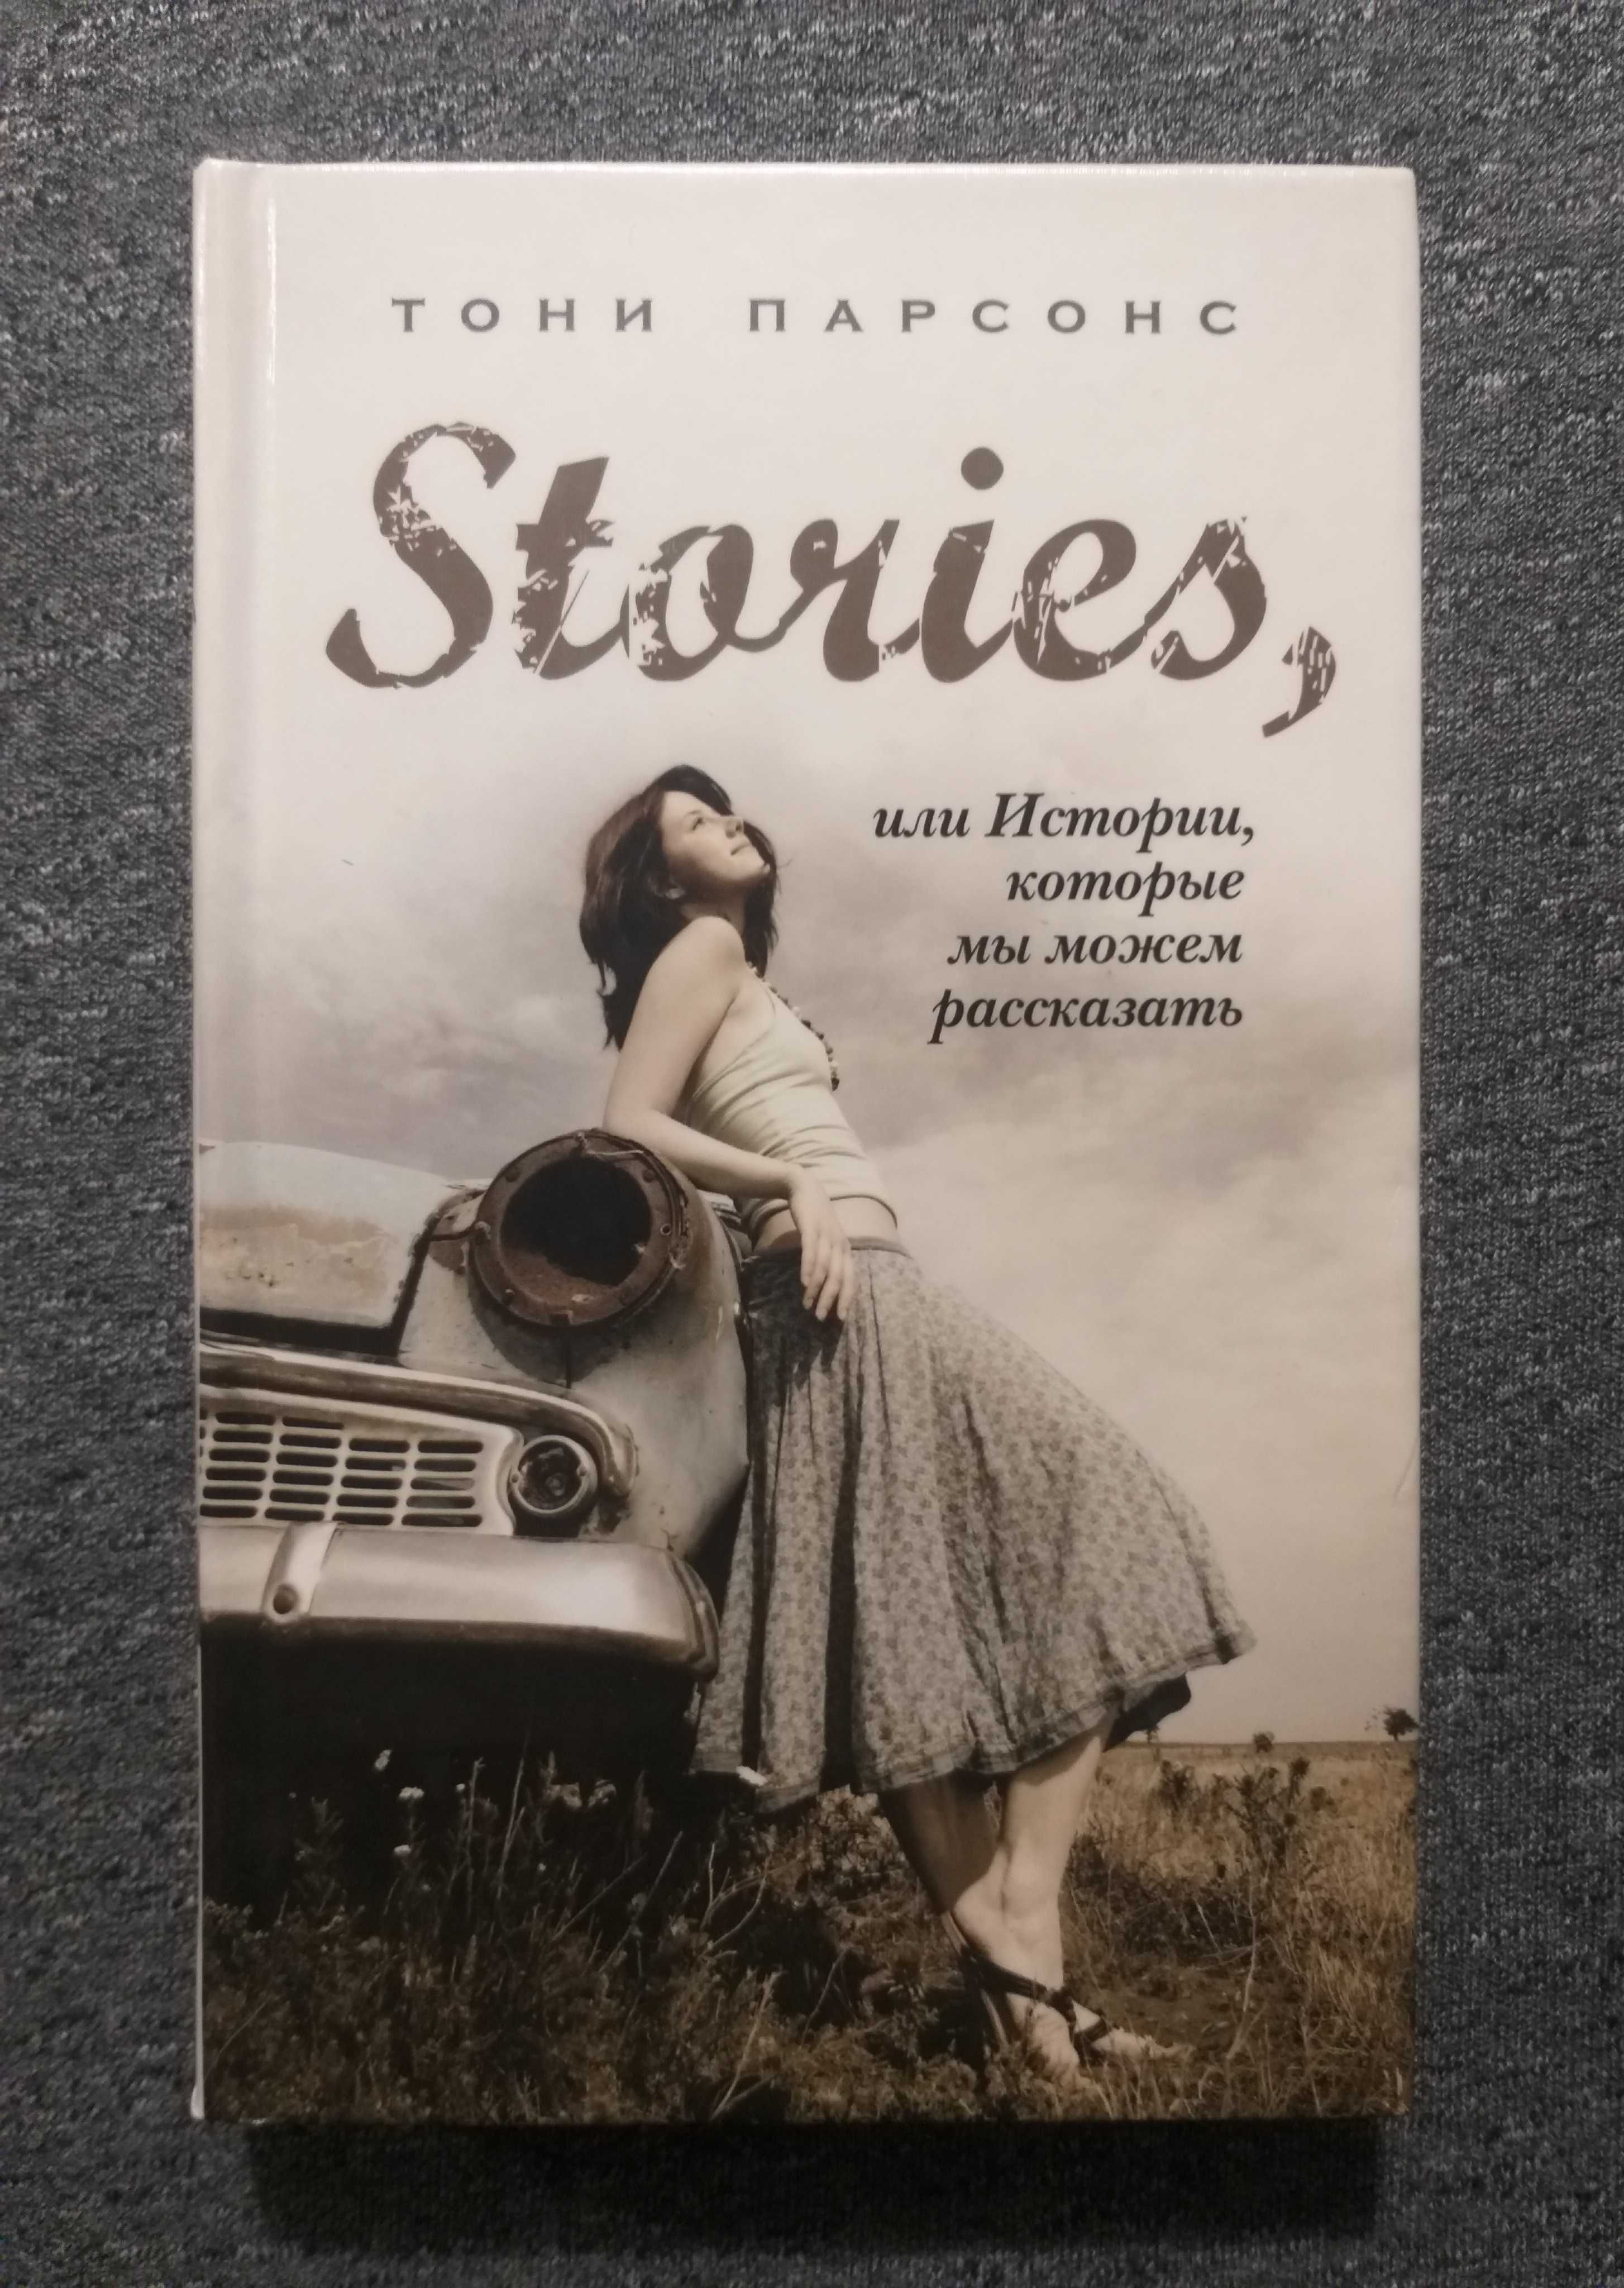 "STORIES, или Истории, которые мы можем рассказать" - Тони Парсонс